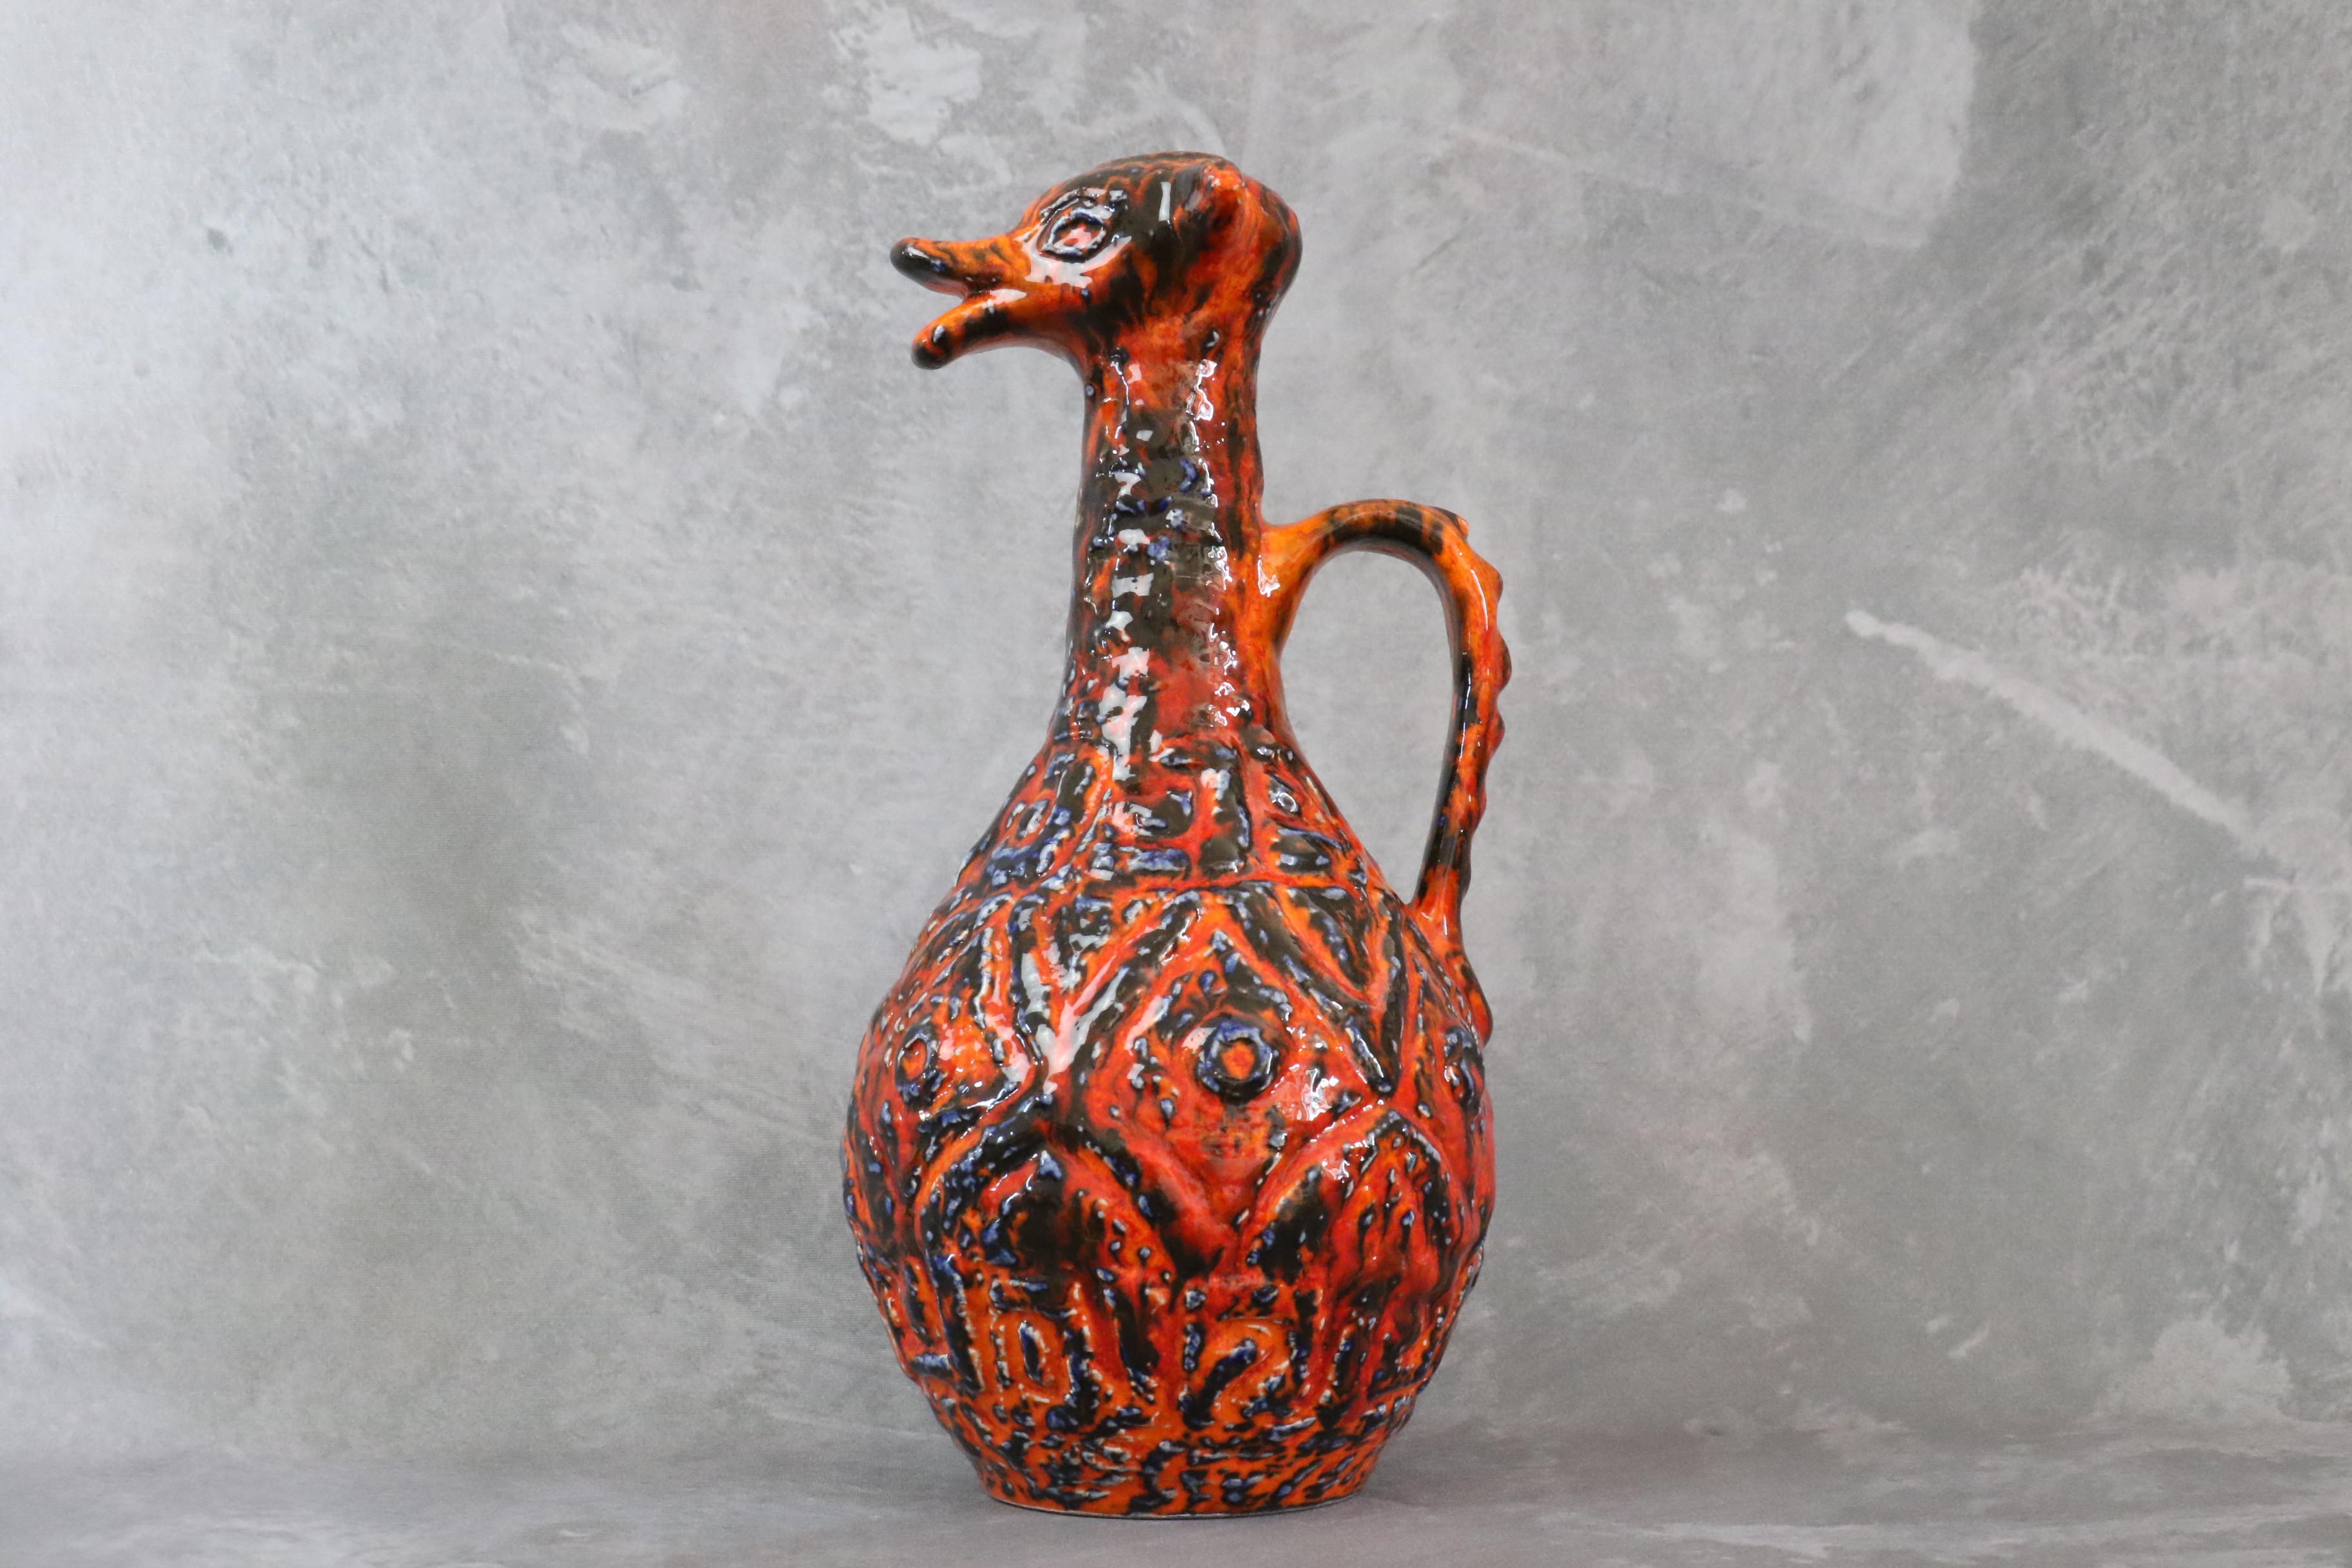 Grand vase zoomorphe en lave rouge grasse de JASBA - 1970 - Céramique d'Allemagne de l'Ouest

Superbe vase zoomorphe de l'atelier Jasba en lave grasse rouge. Il s'agit d'une pièce rare. Il attire l'attention par ses couleurs vives et ses motifs